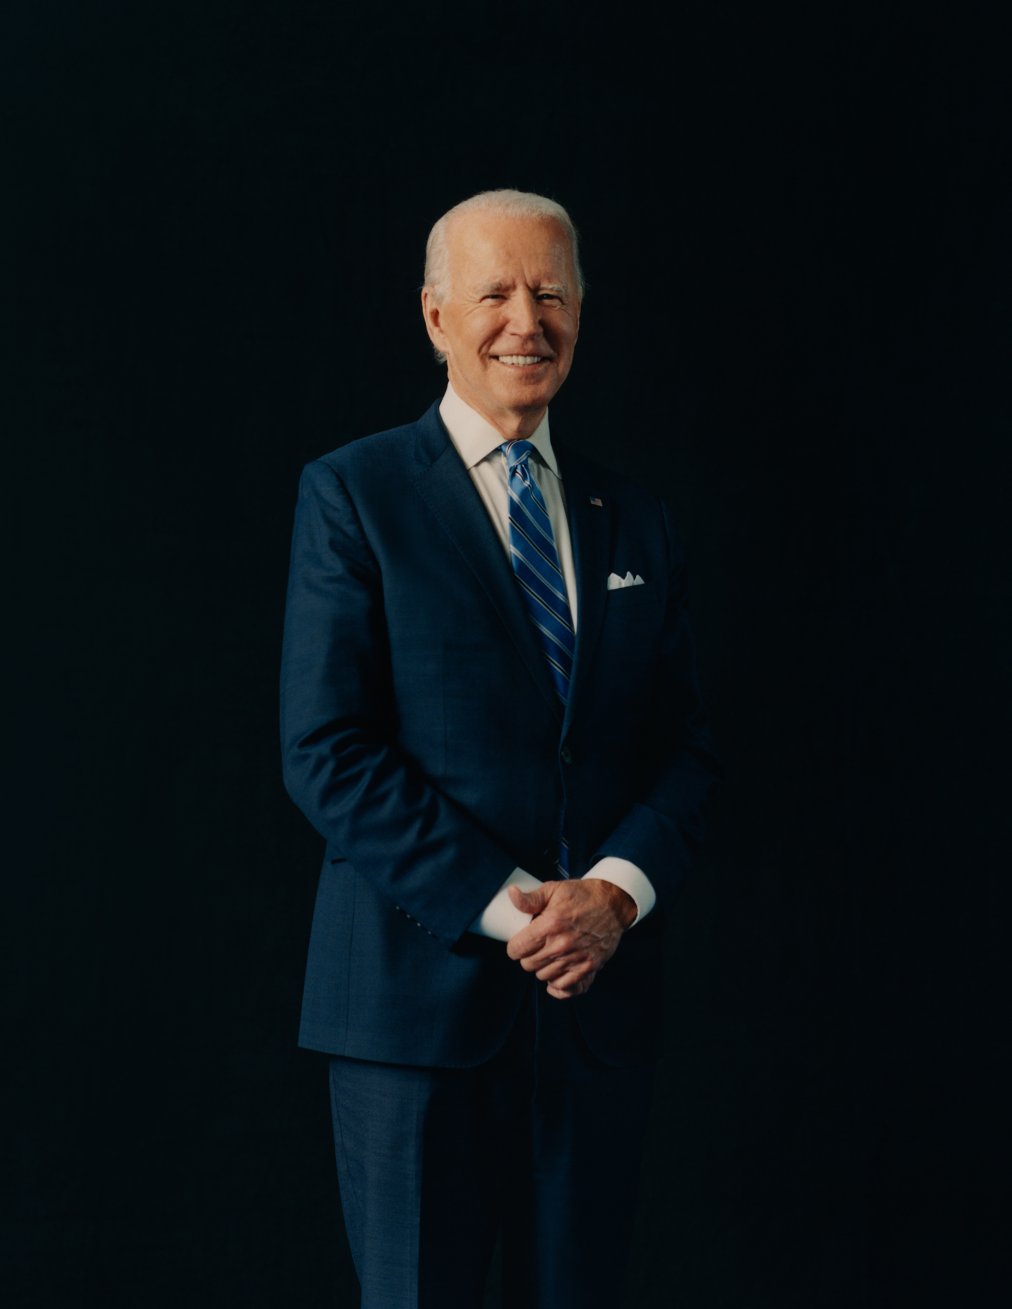 Joe Biden | TIME